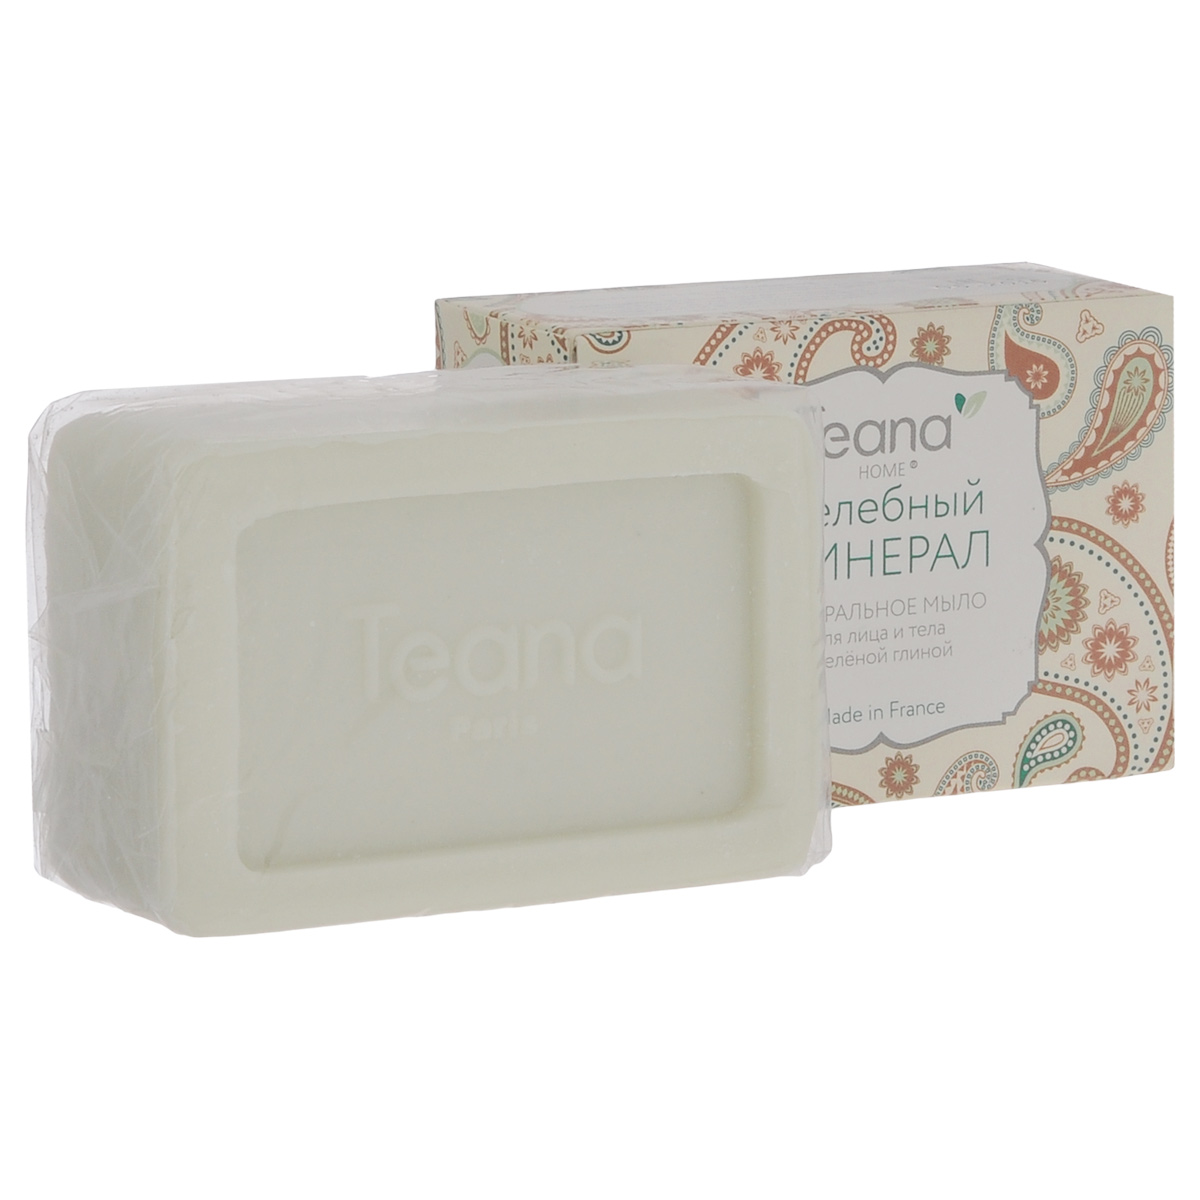 Teana Натуральное мыло для лица и тела 